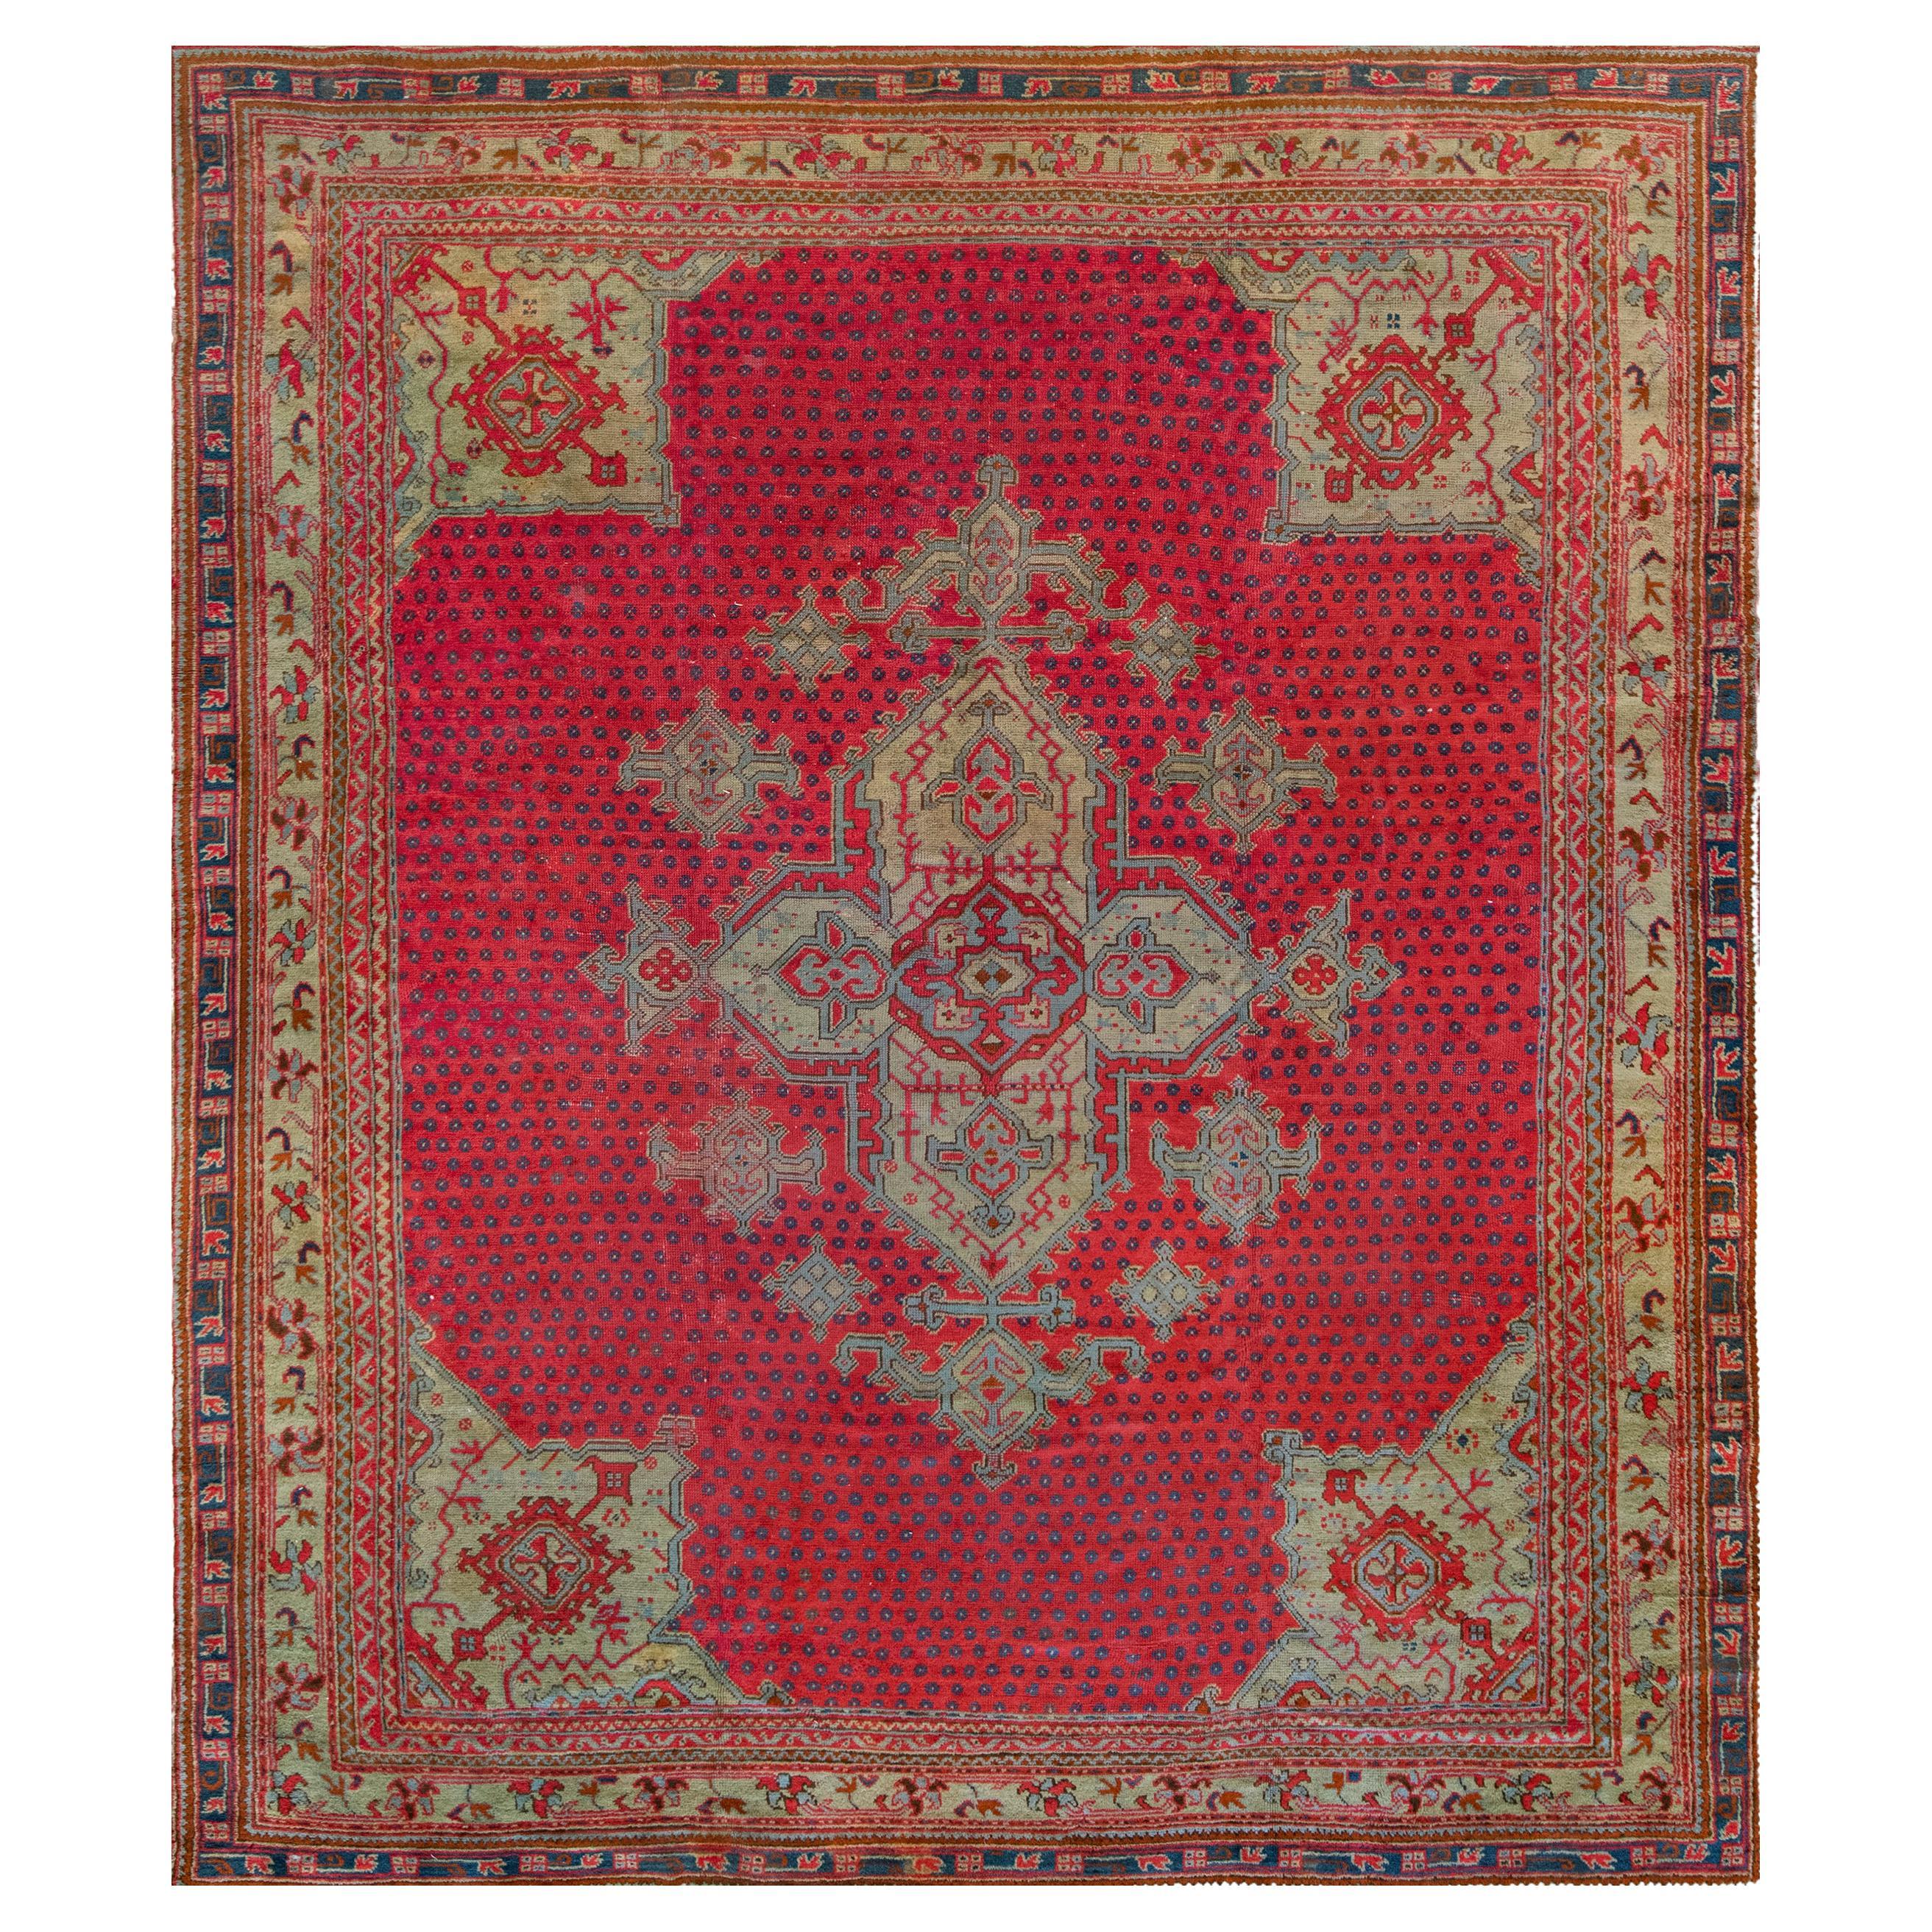 Atemberaubender antiker handgewebter Oushak-Teppich aus Wolle